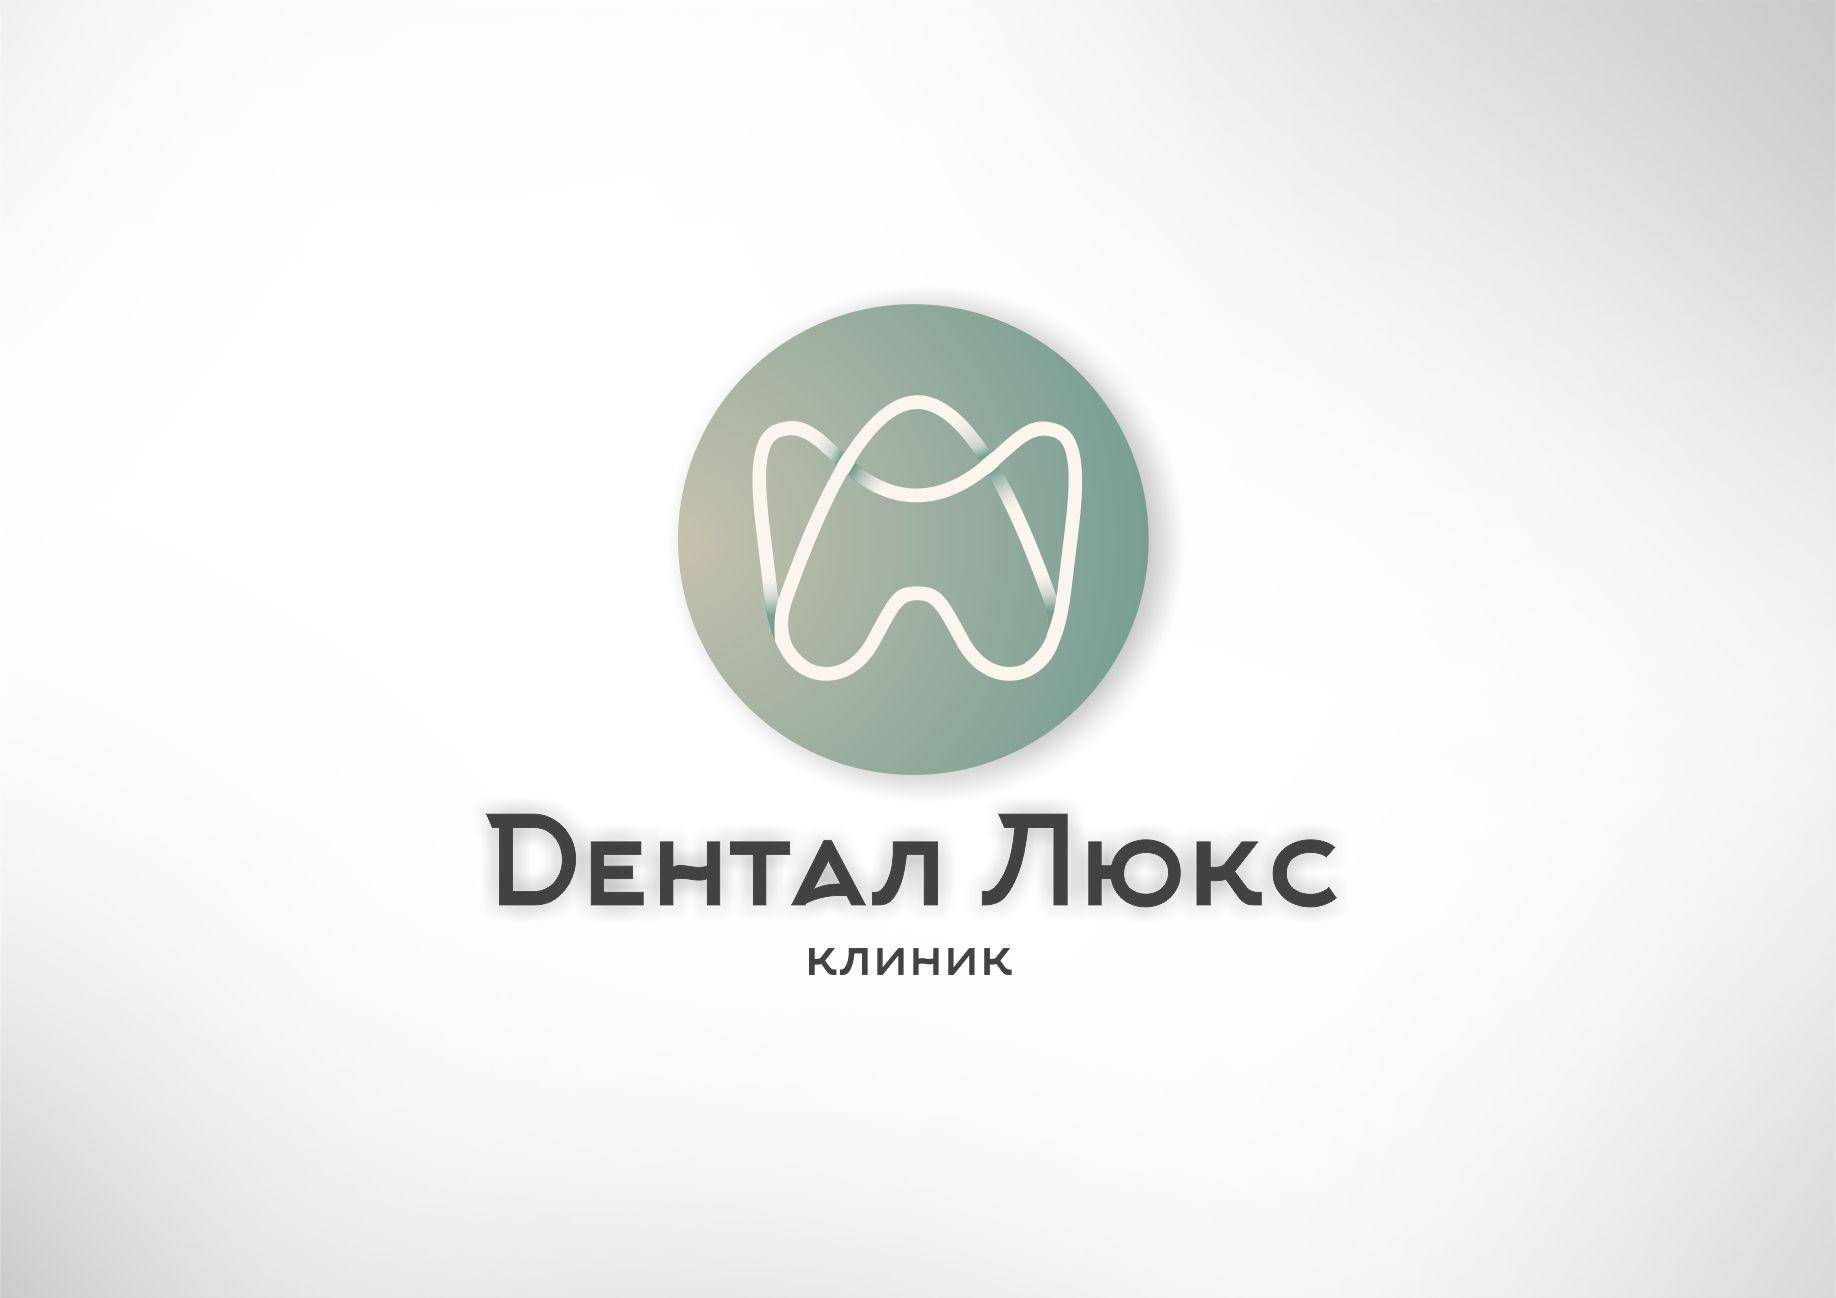 Стоматологический Магазин Минск